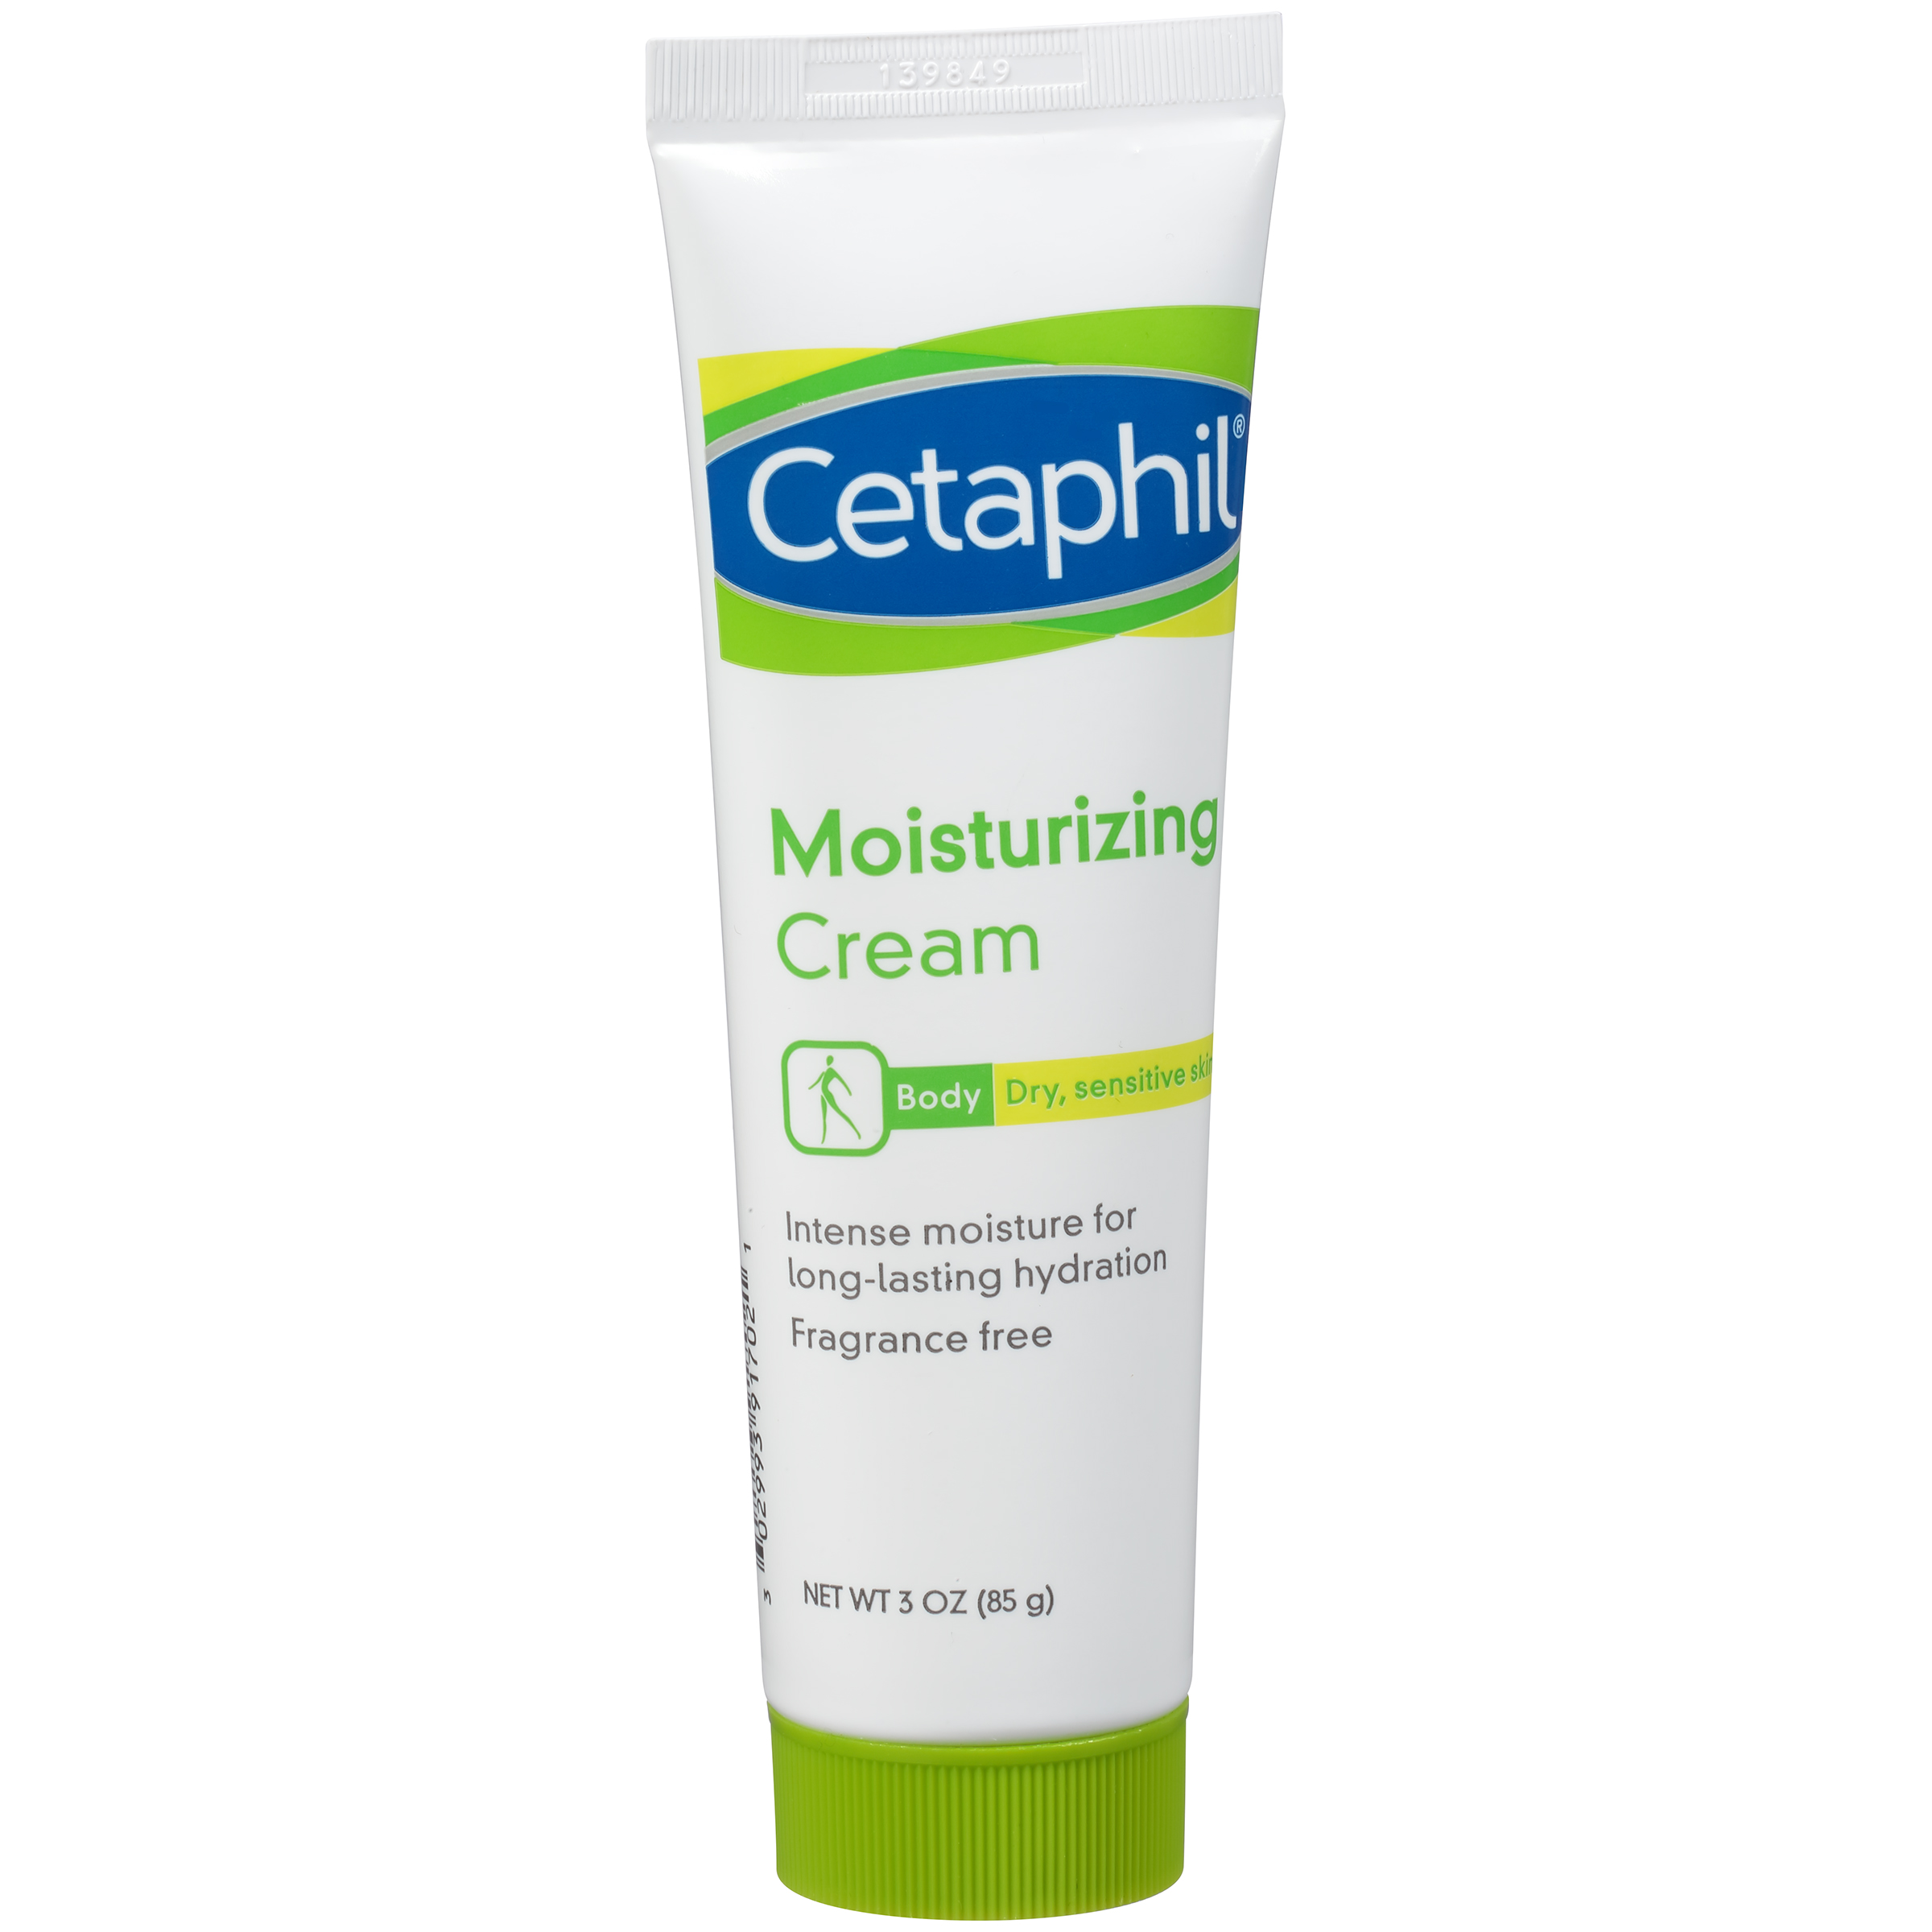 Moisturizing Cream for Dry, Sensitive Skin 3 oz